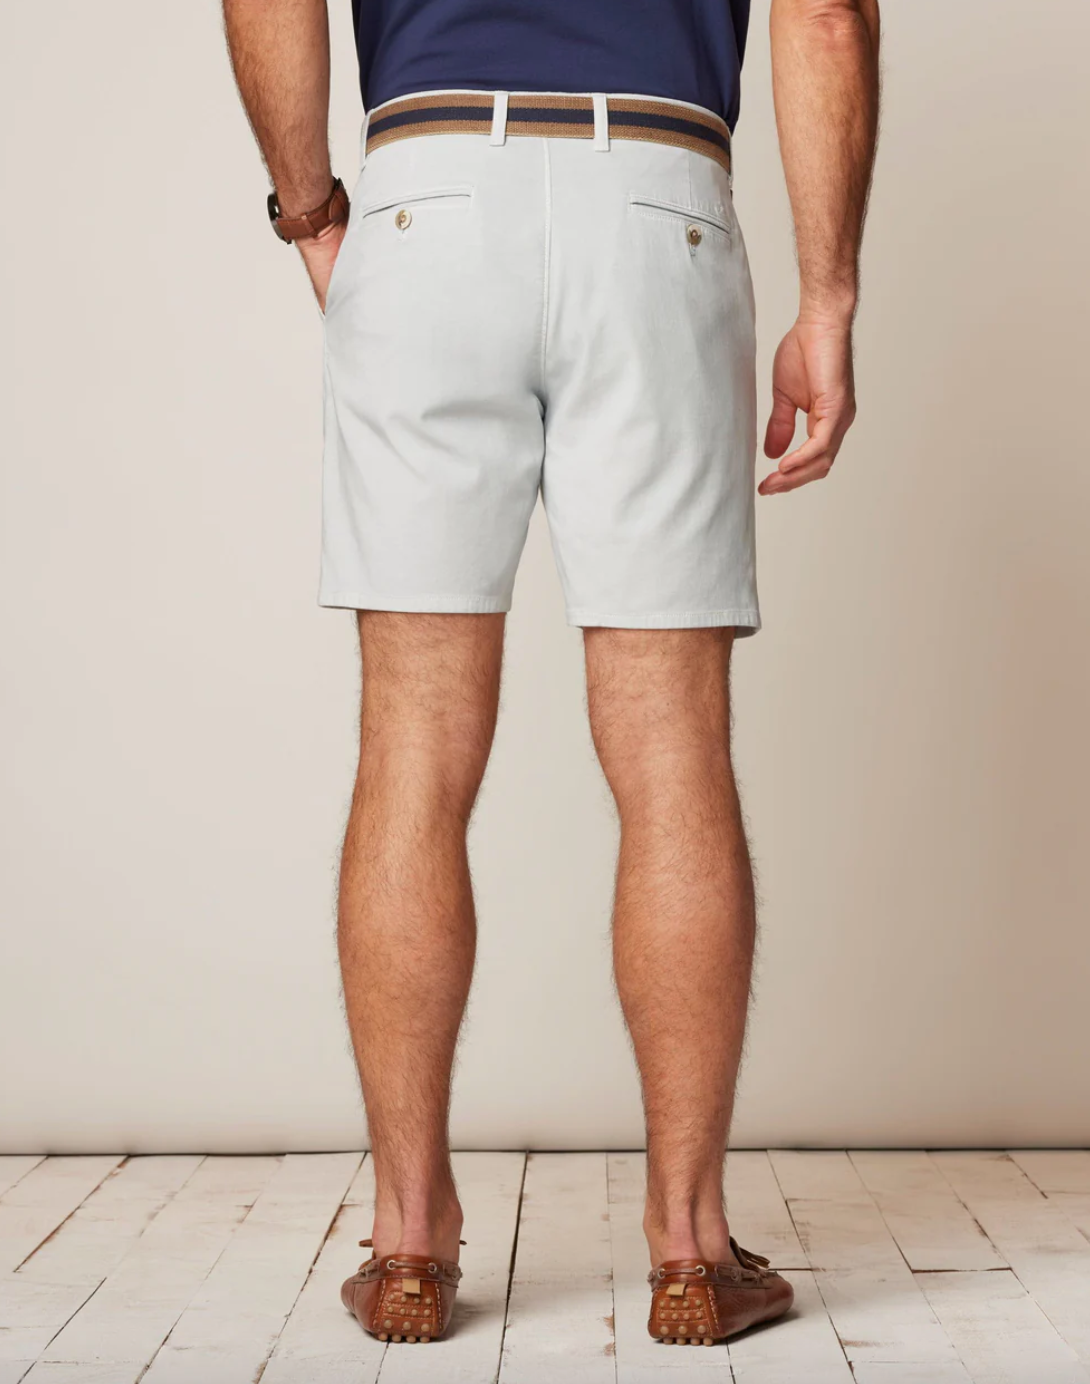 Nassau Shorts-Chrome